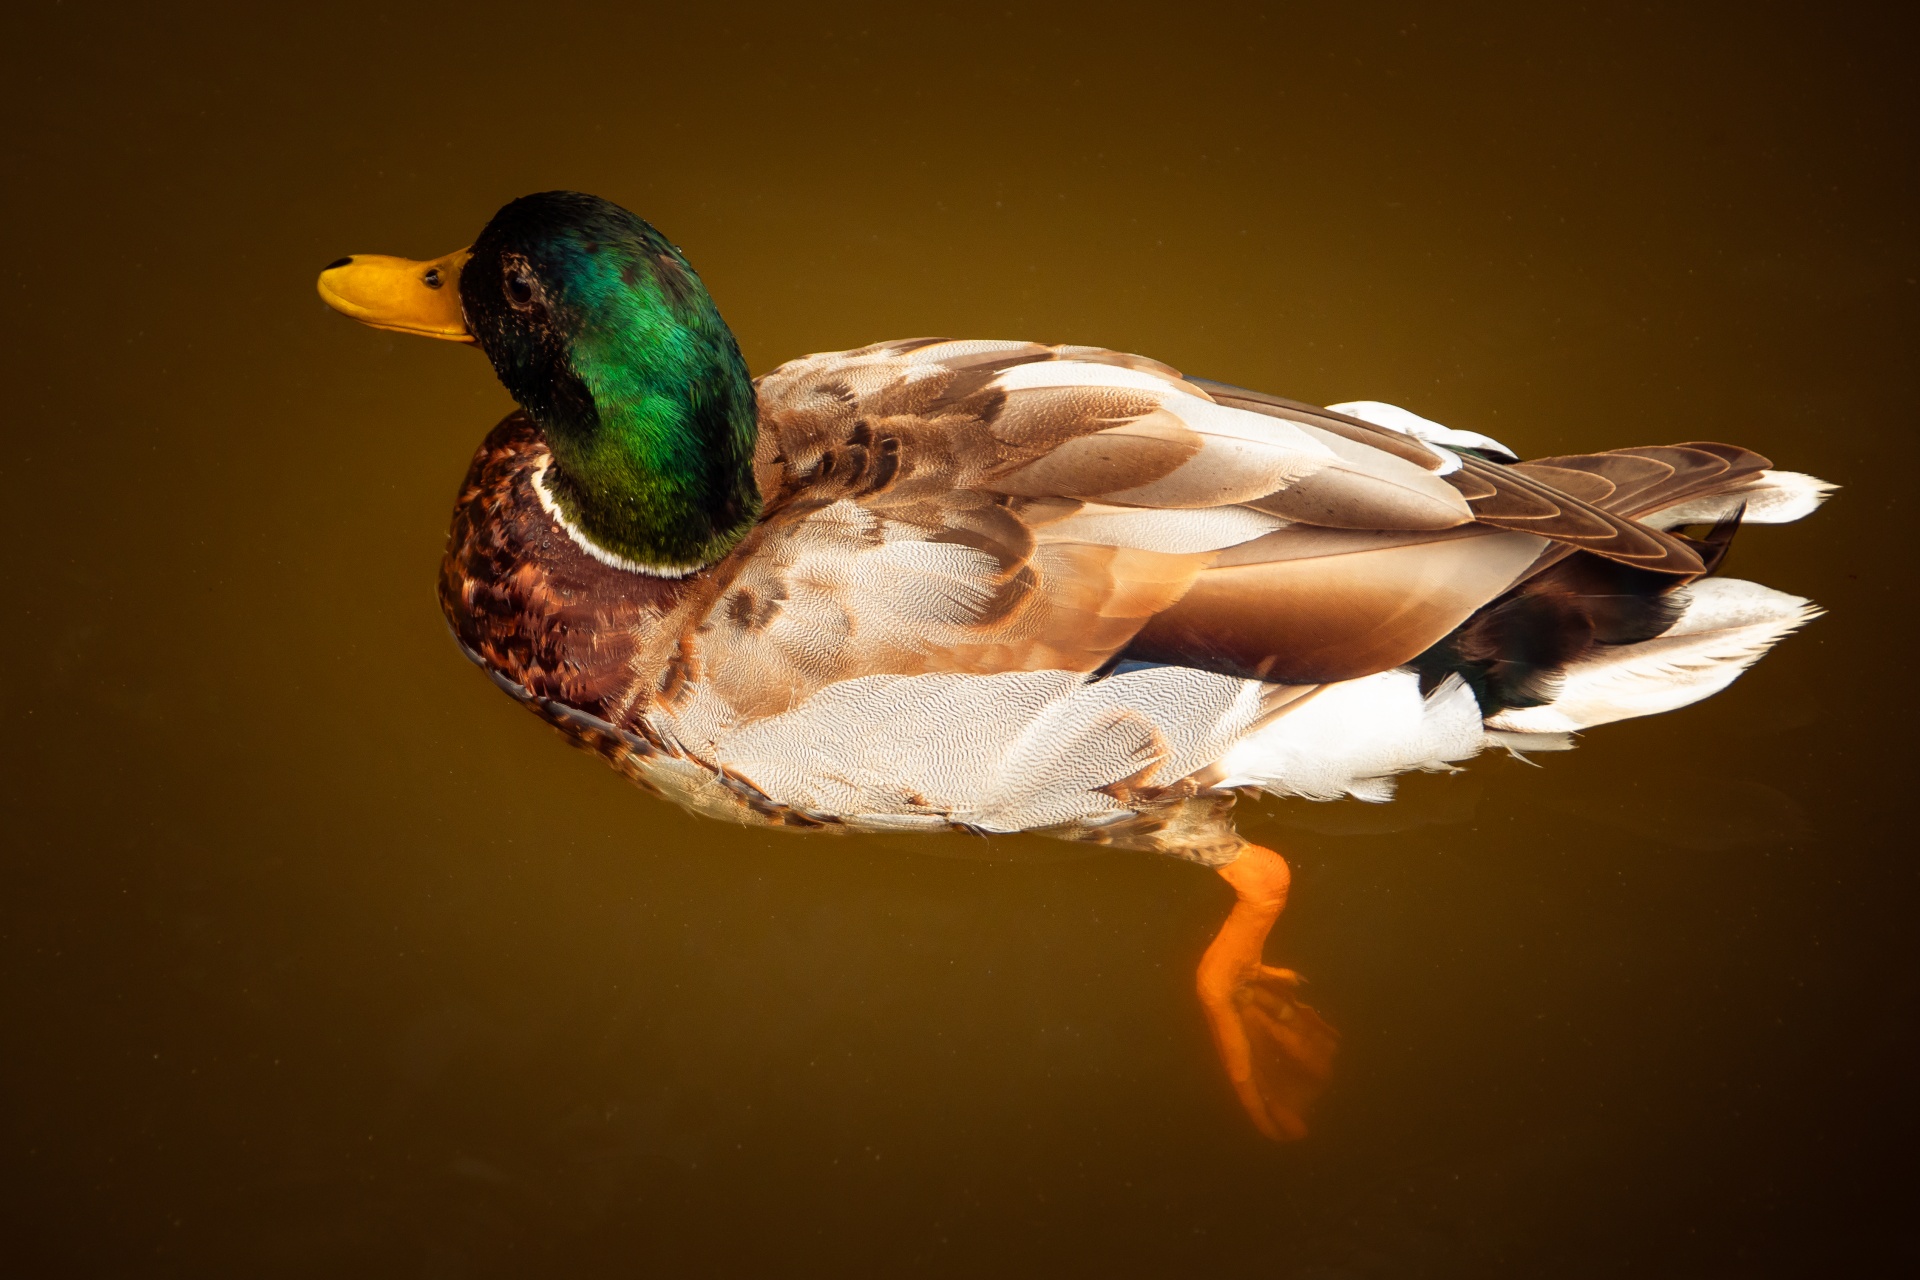 Mallard duck in water